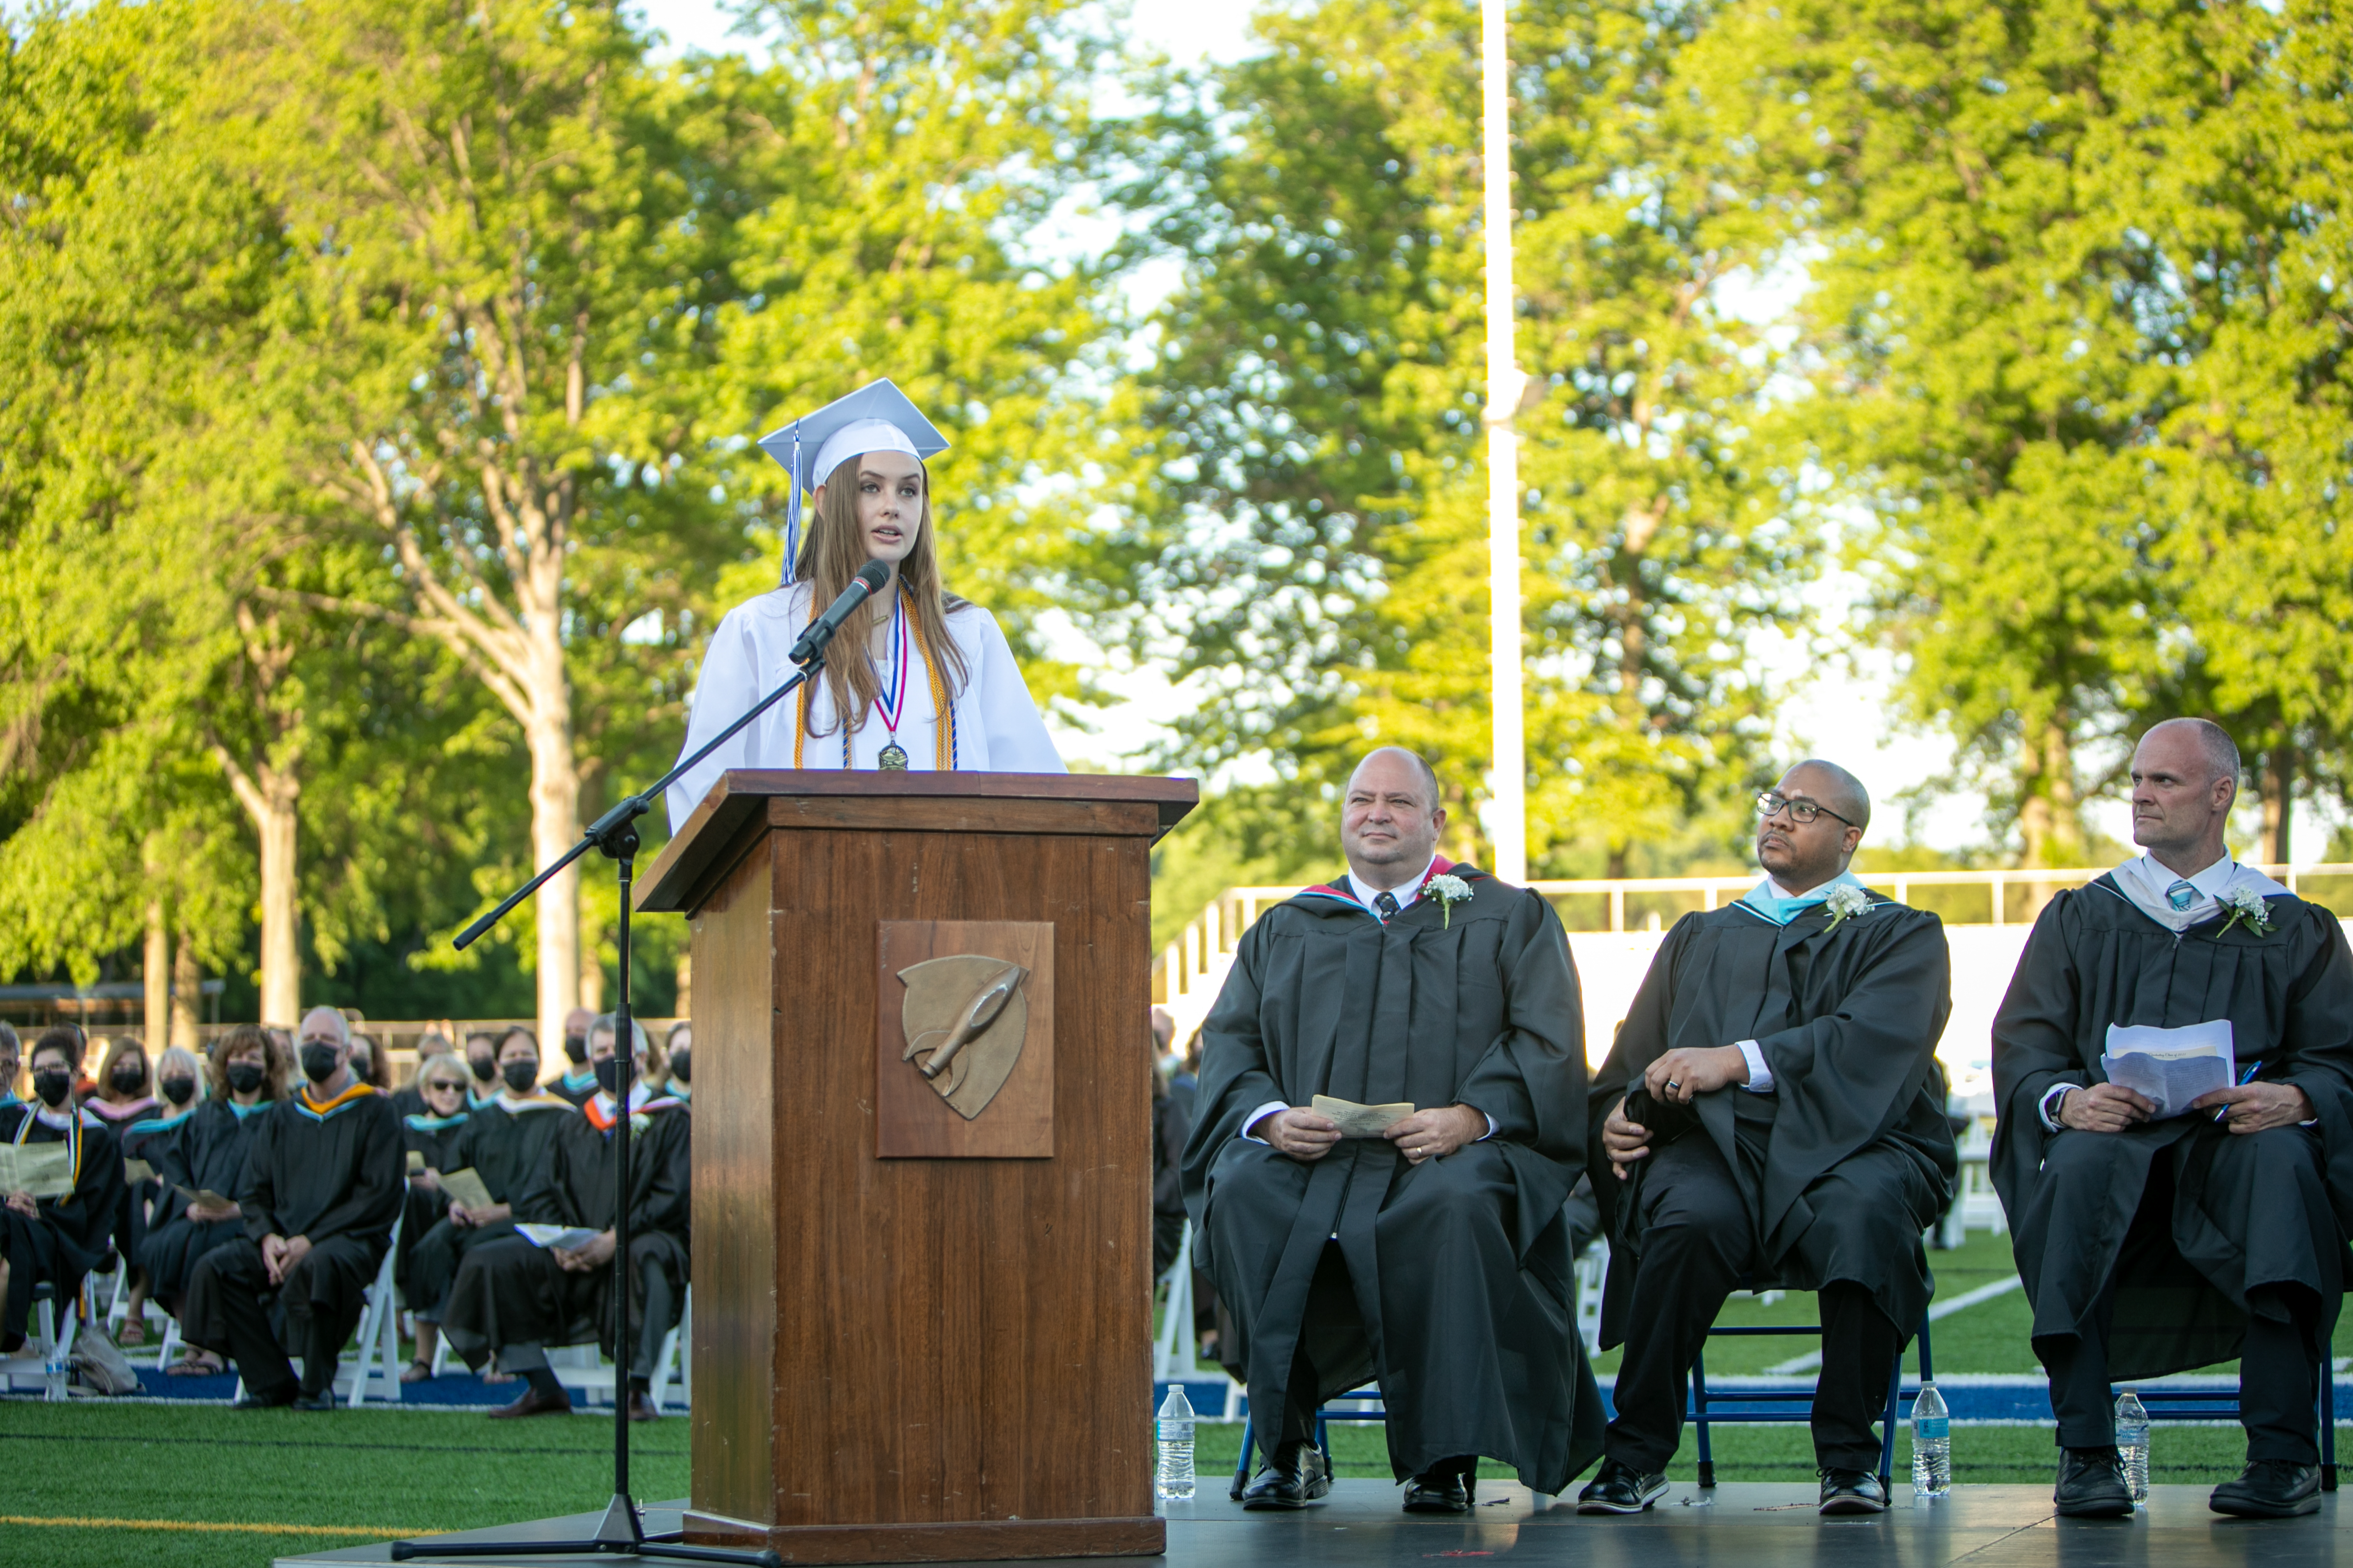 Girl giving graduation speech